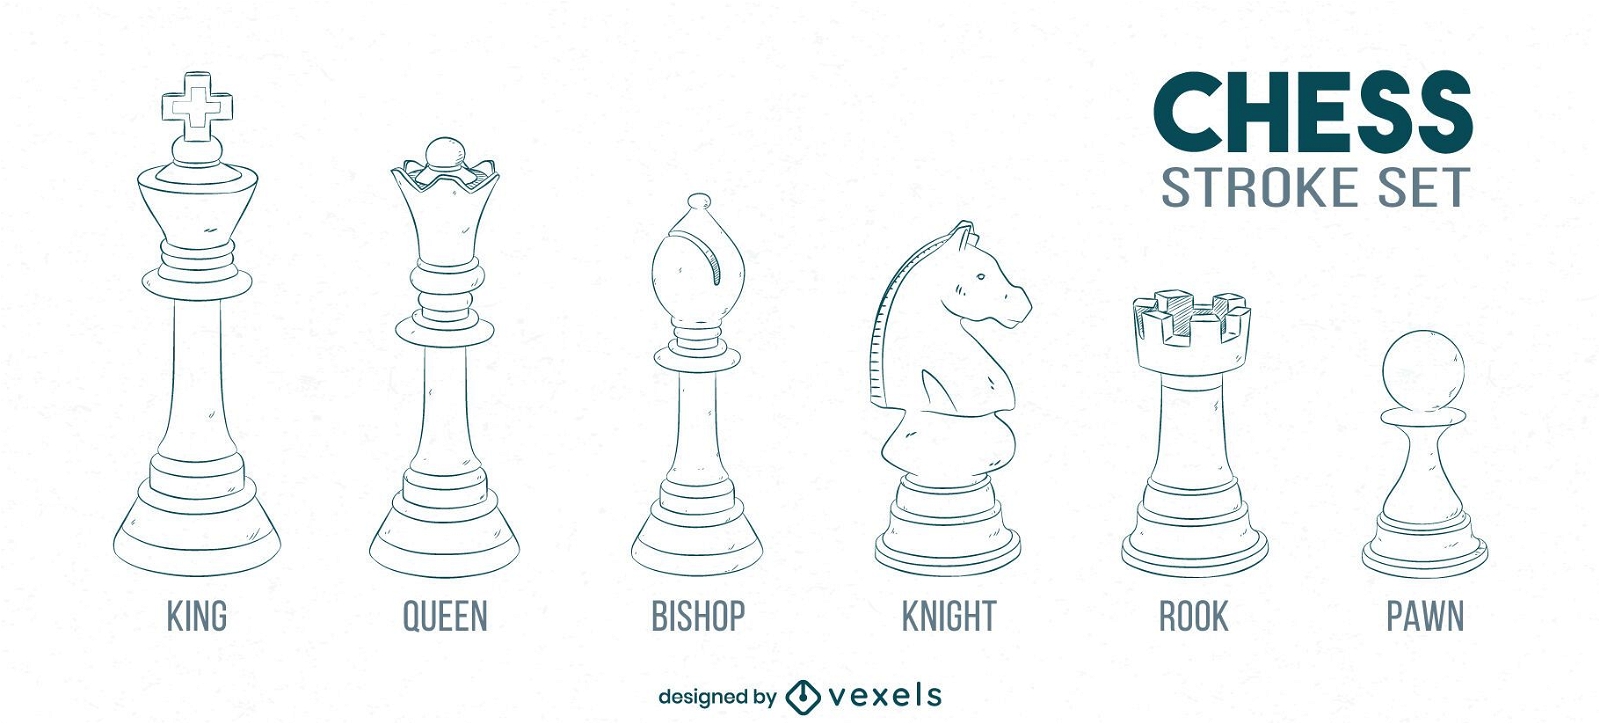 Peças de xadrez rei e rainha desenhadas em estilo de desenho elementos do  jogo ilustração vetorial desenhada à mão